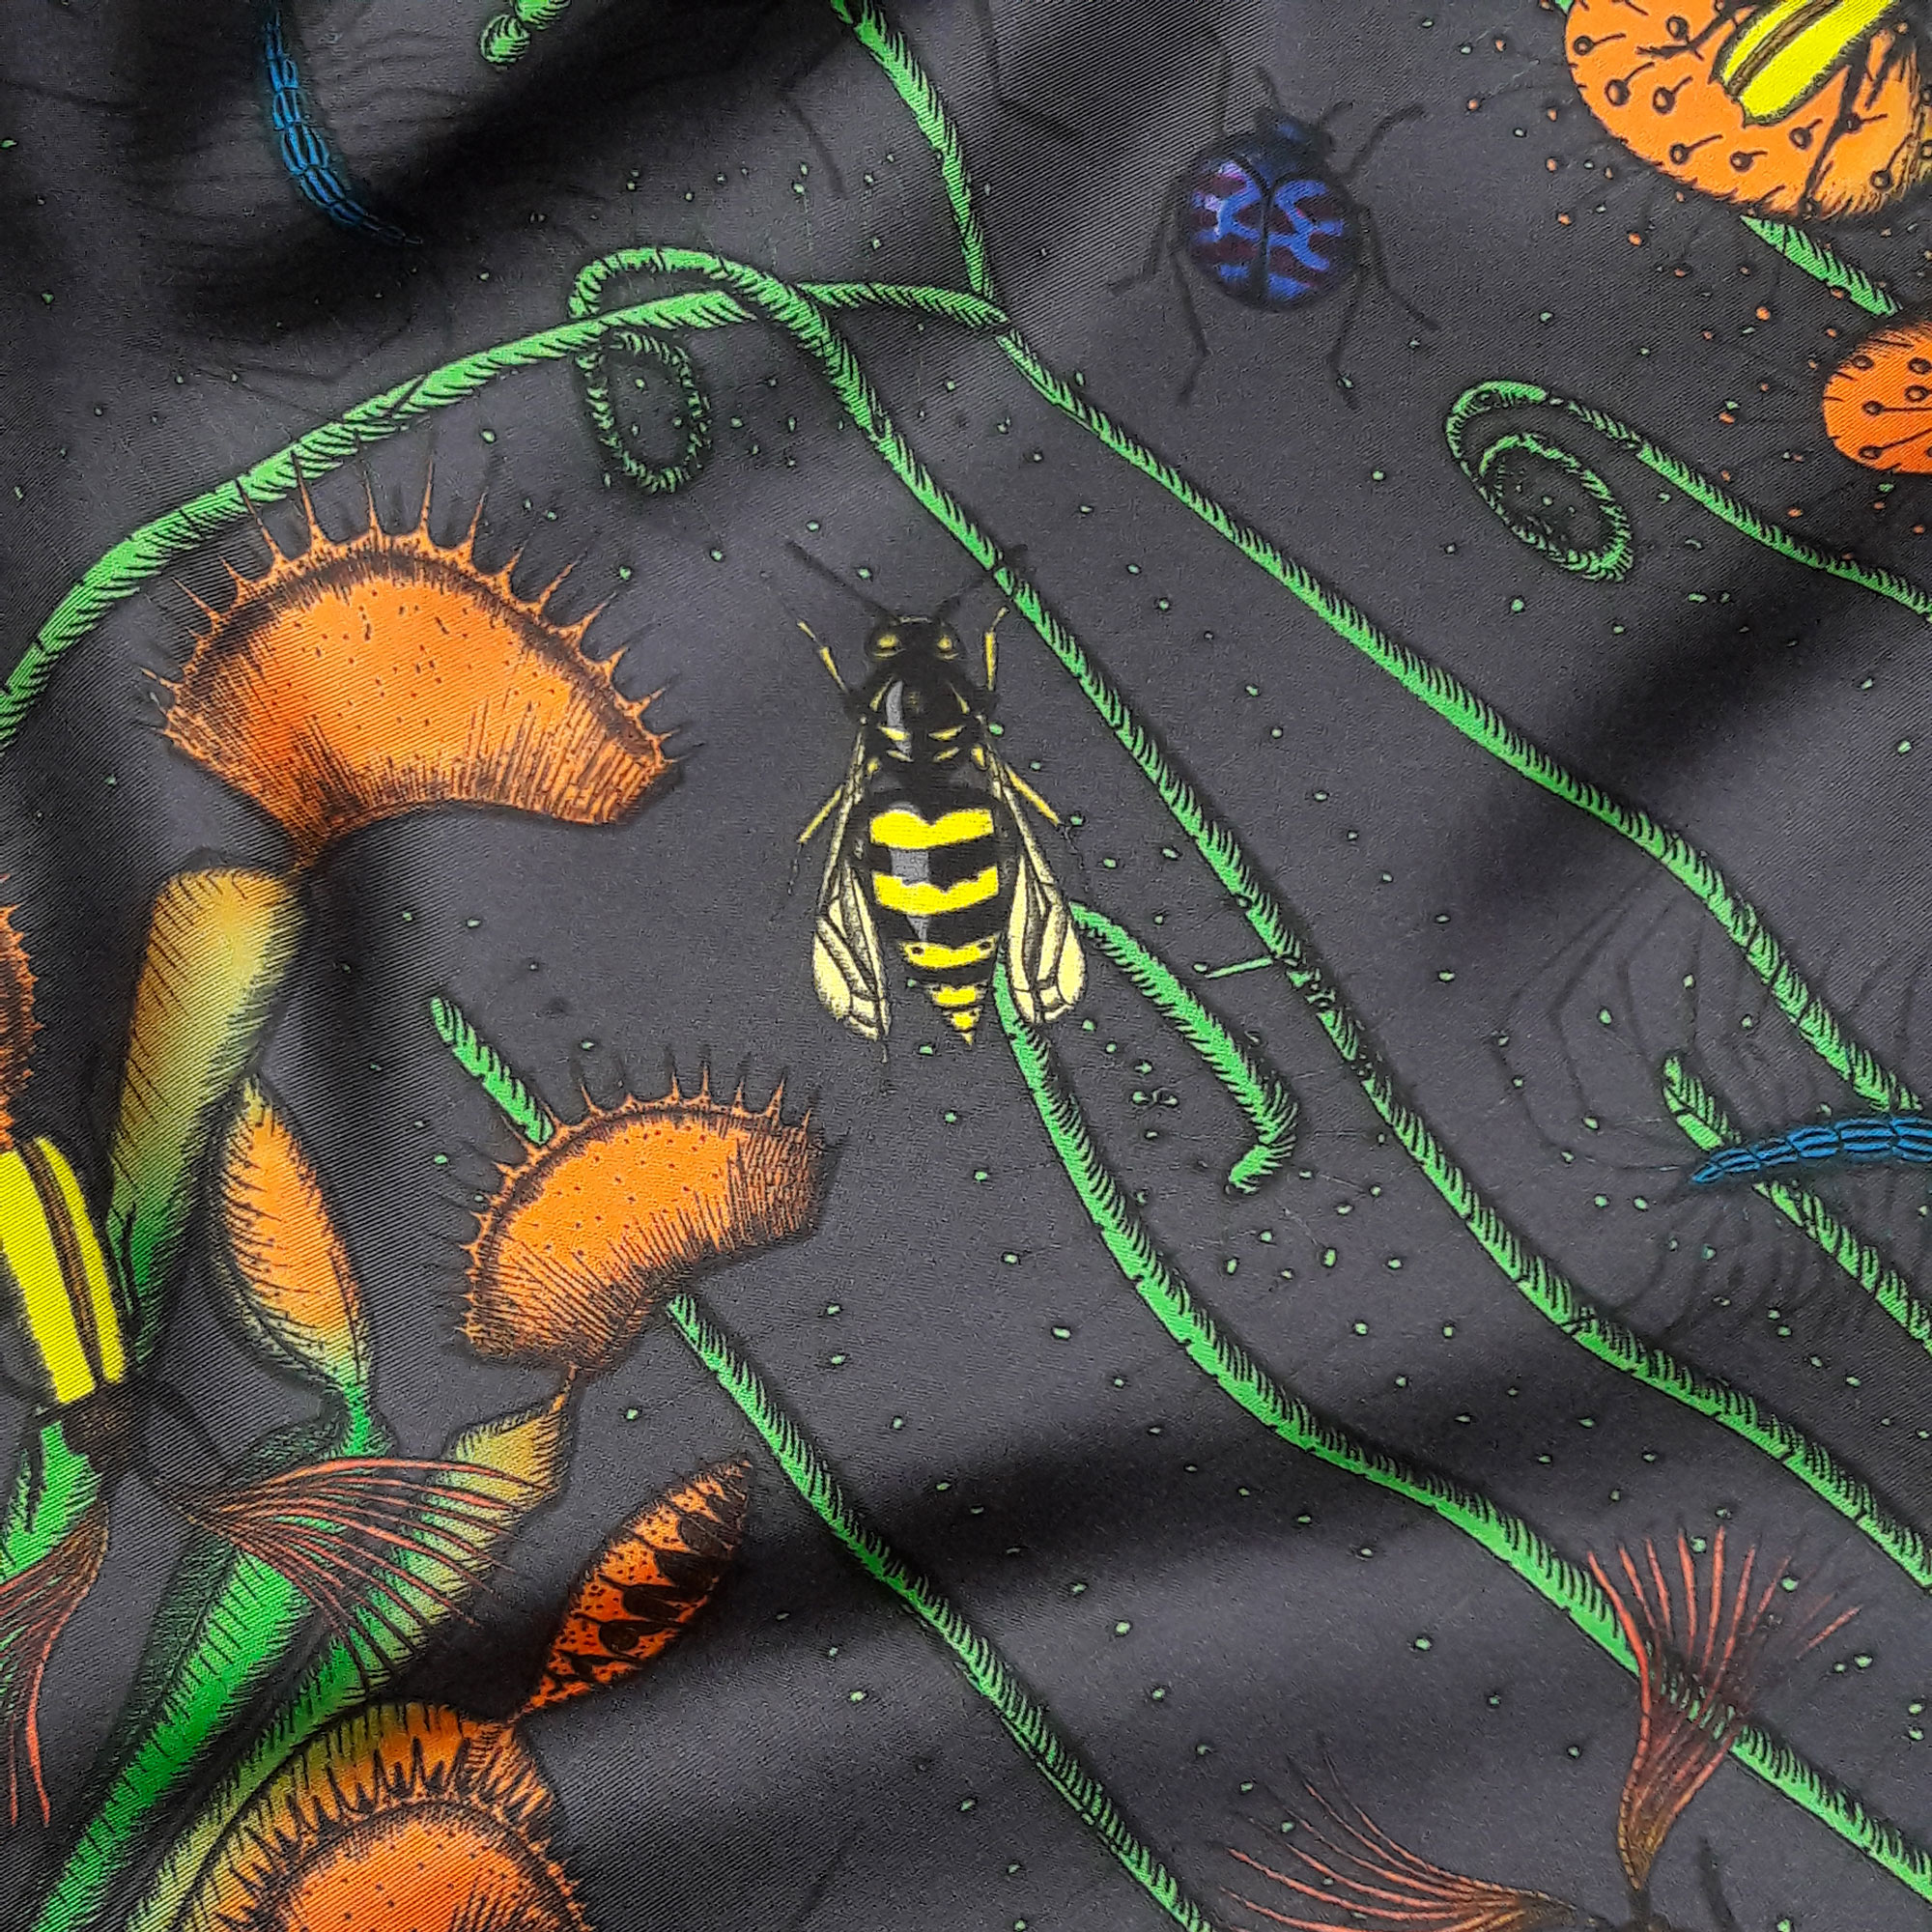 Détail foulard carré gris, des insectes, abeilles, coléoptères et plantes carnivores Céline Dominiak